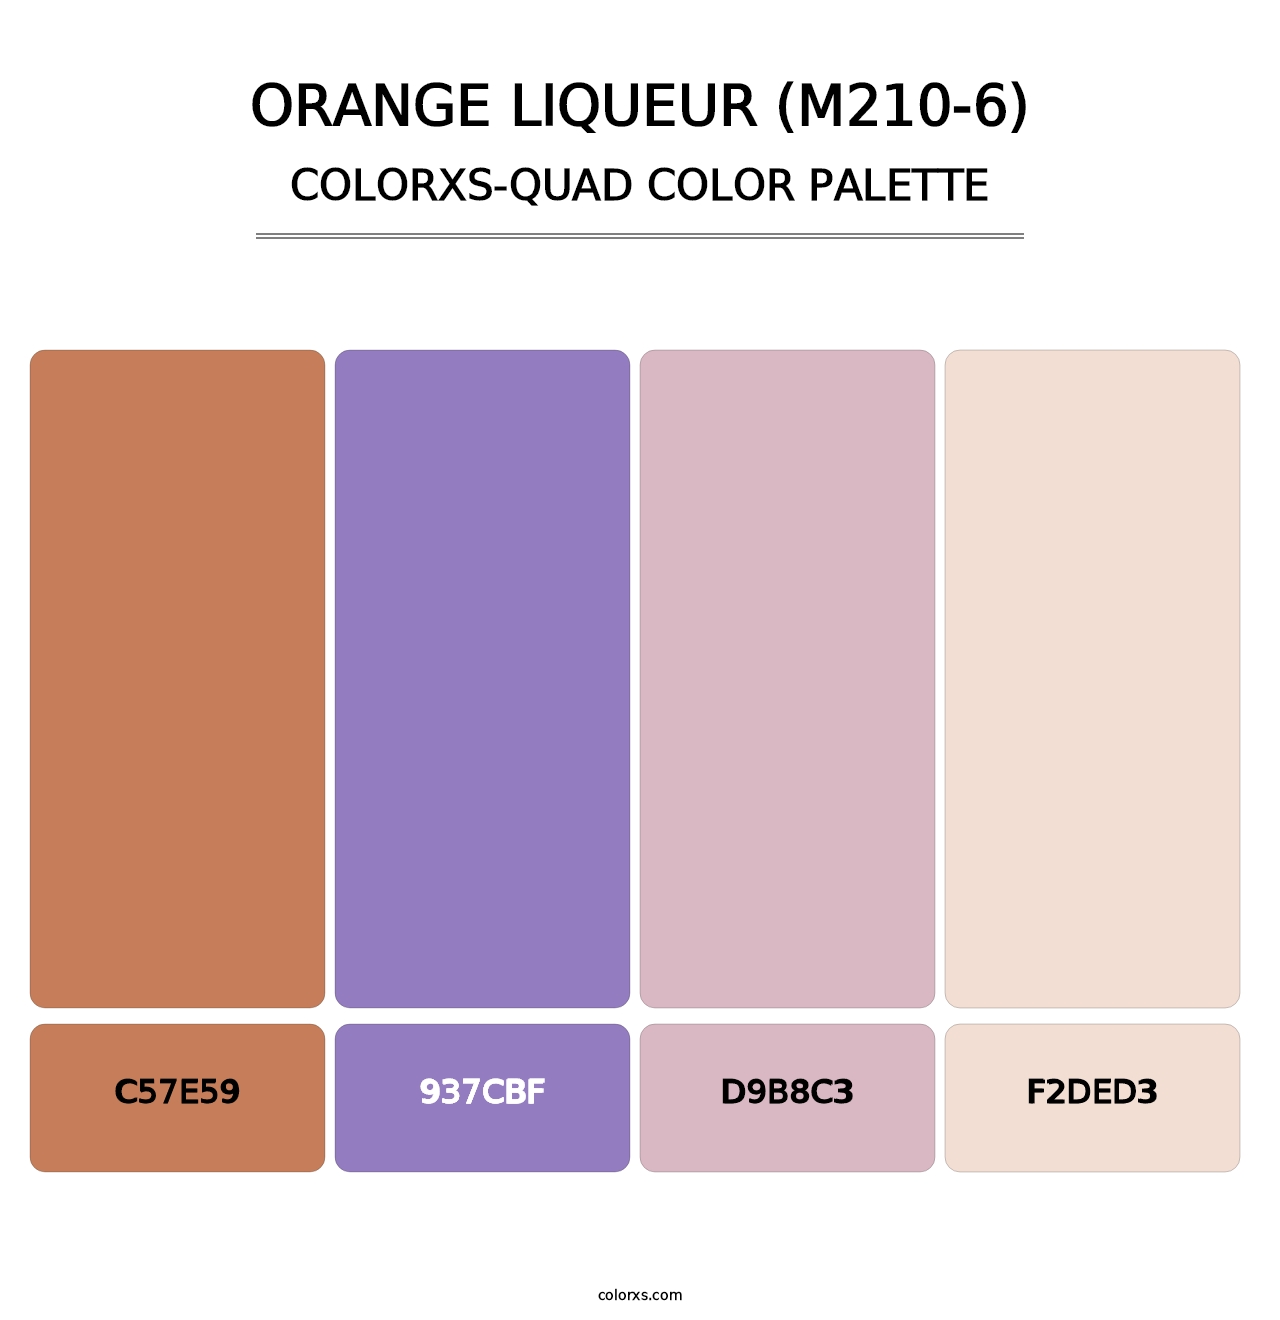 Orange Liqueur (M210-6) - Colorxs Quad Palette